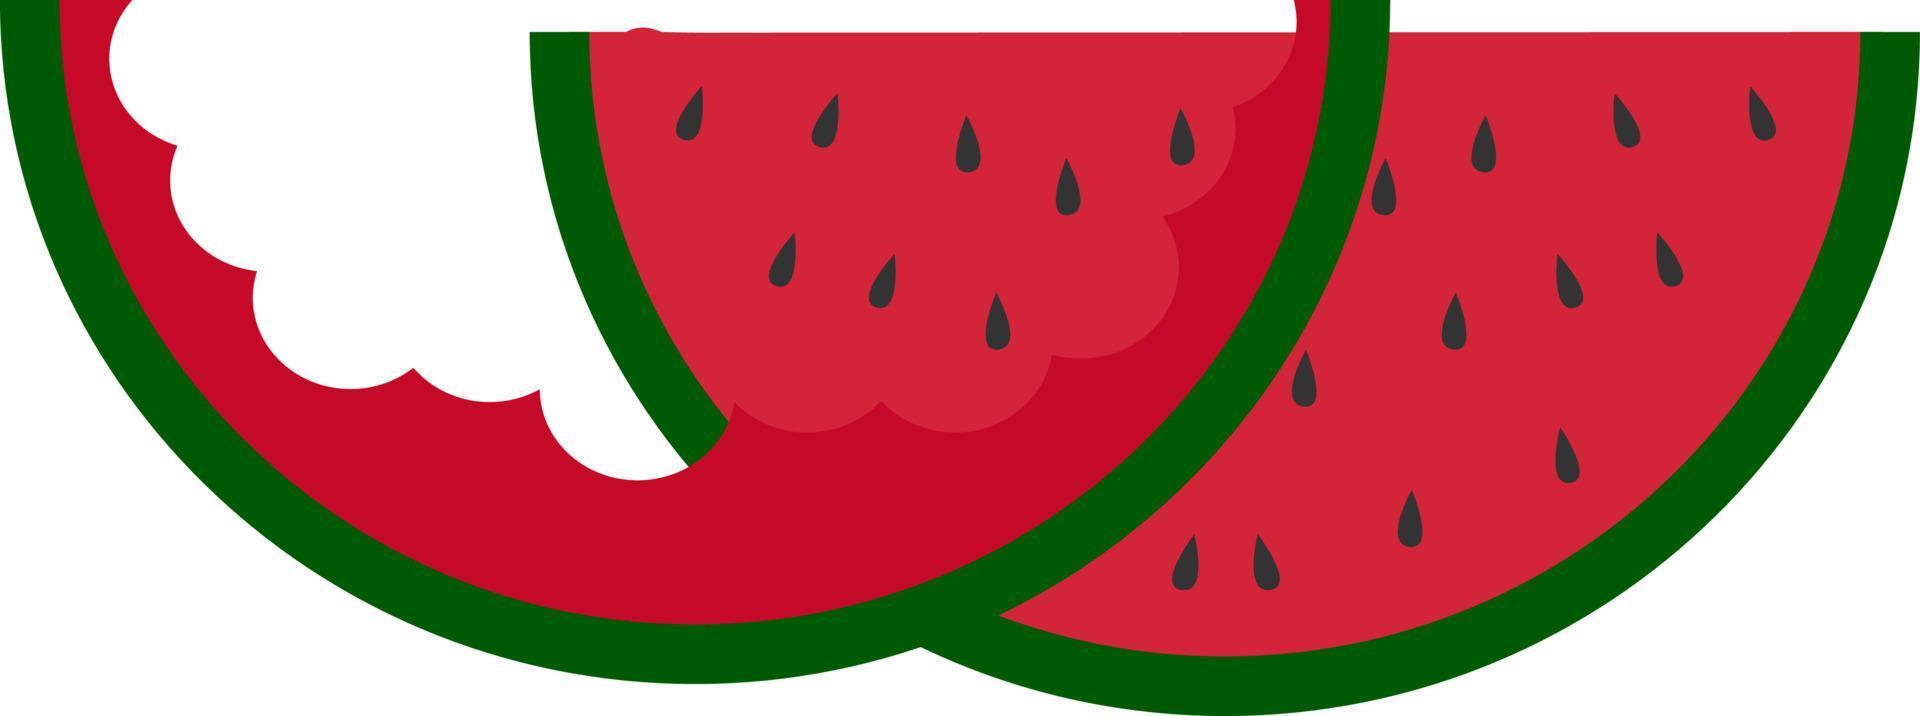 gegessene Wassermelone, Illustration, Vektor auf weißem Hintergrund